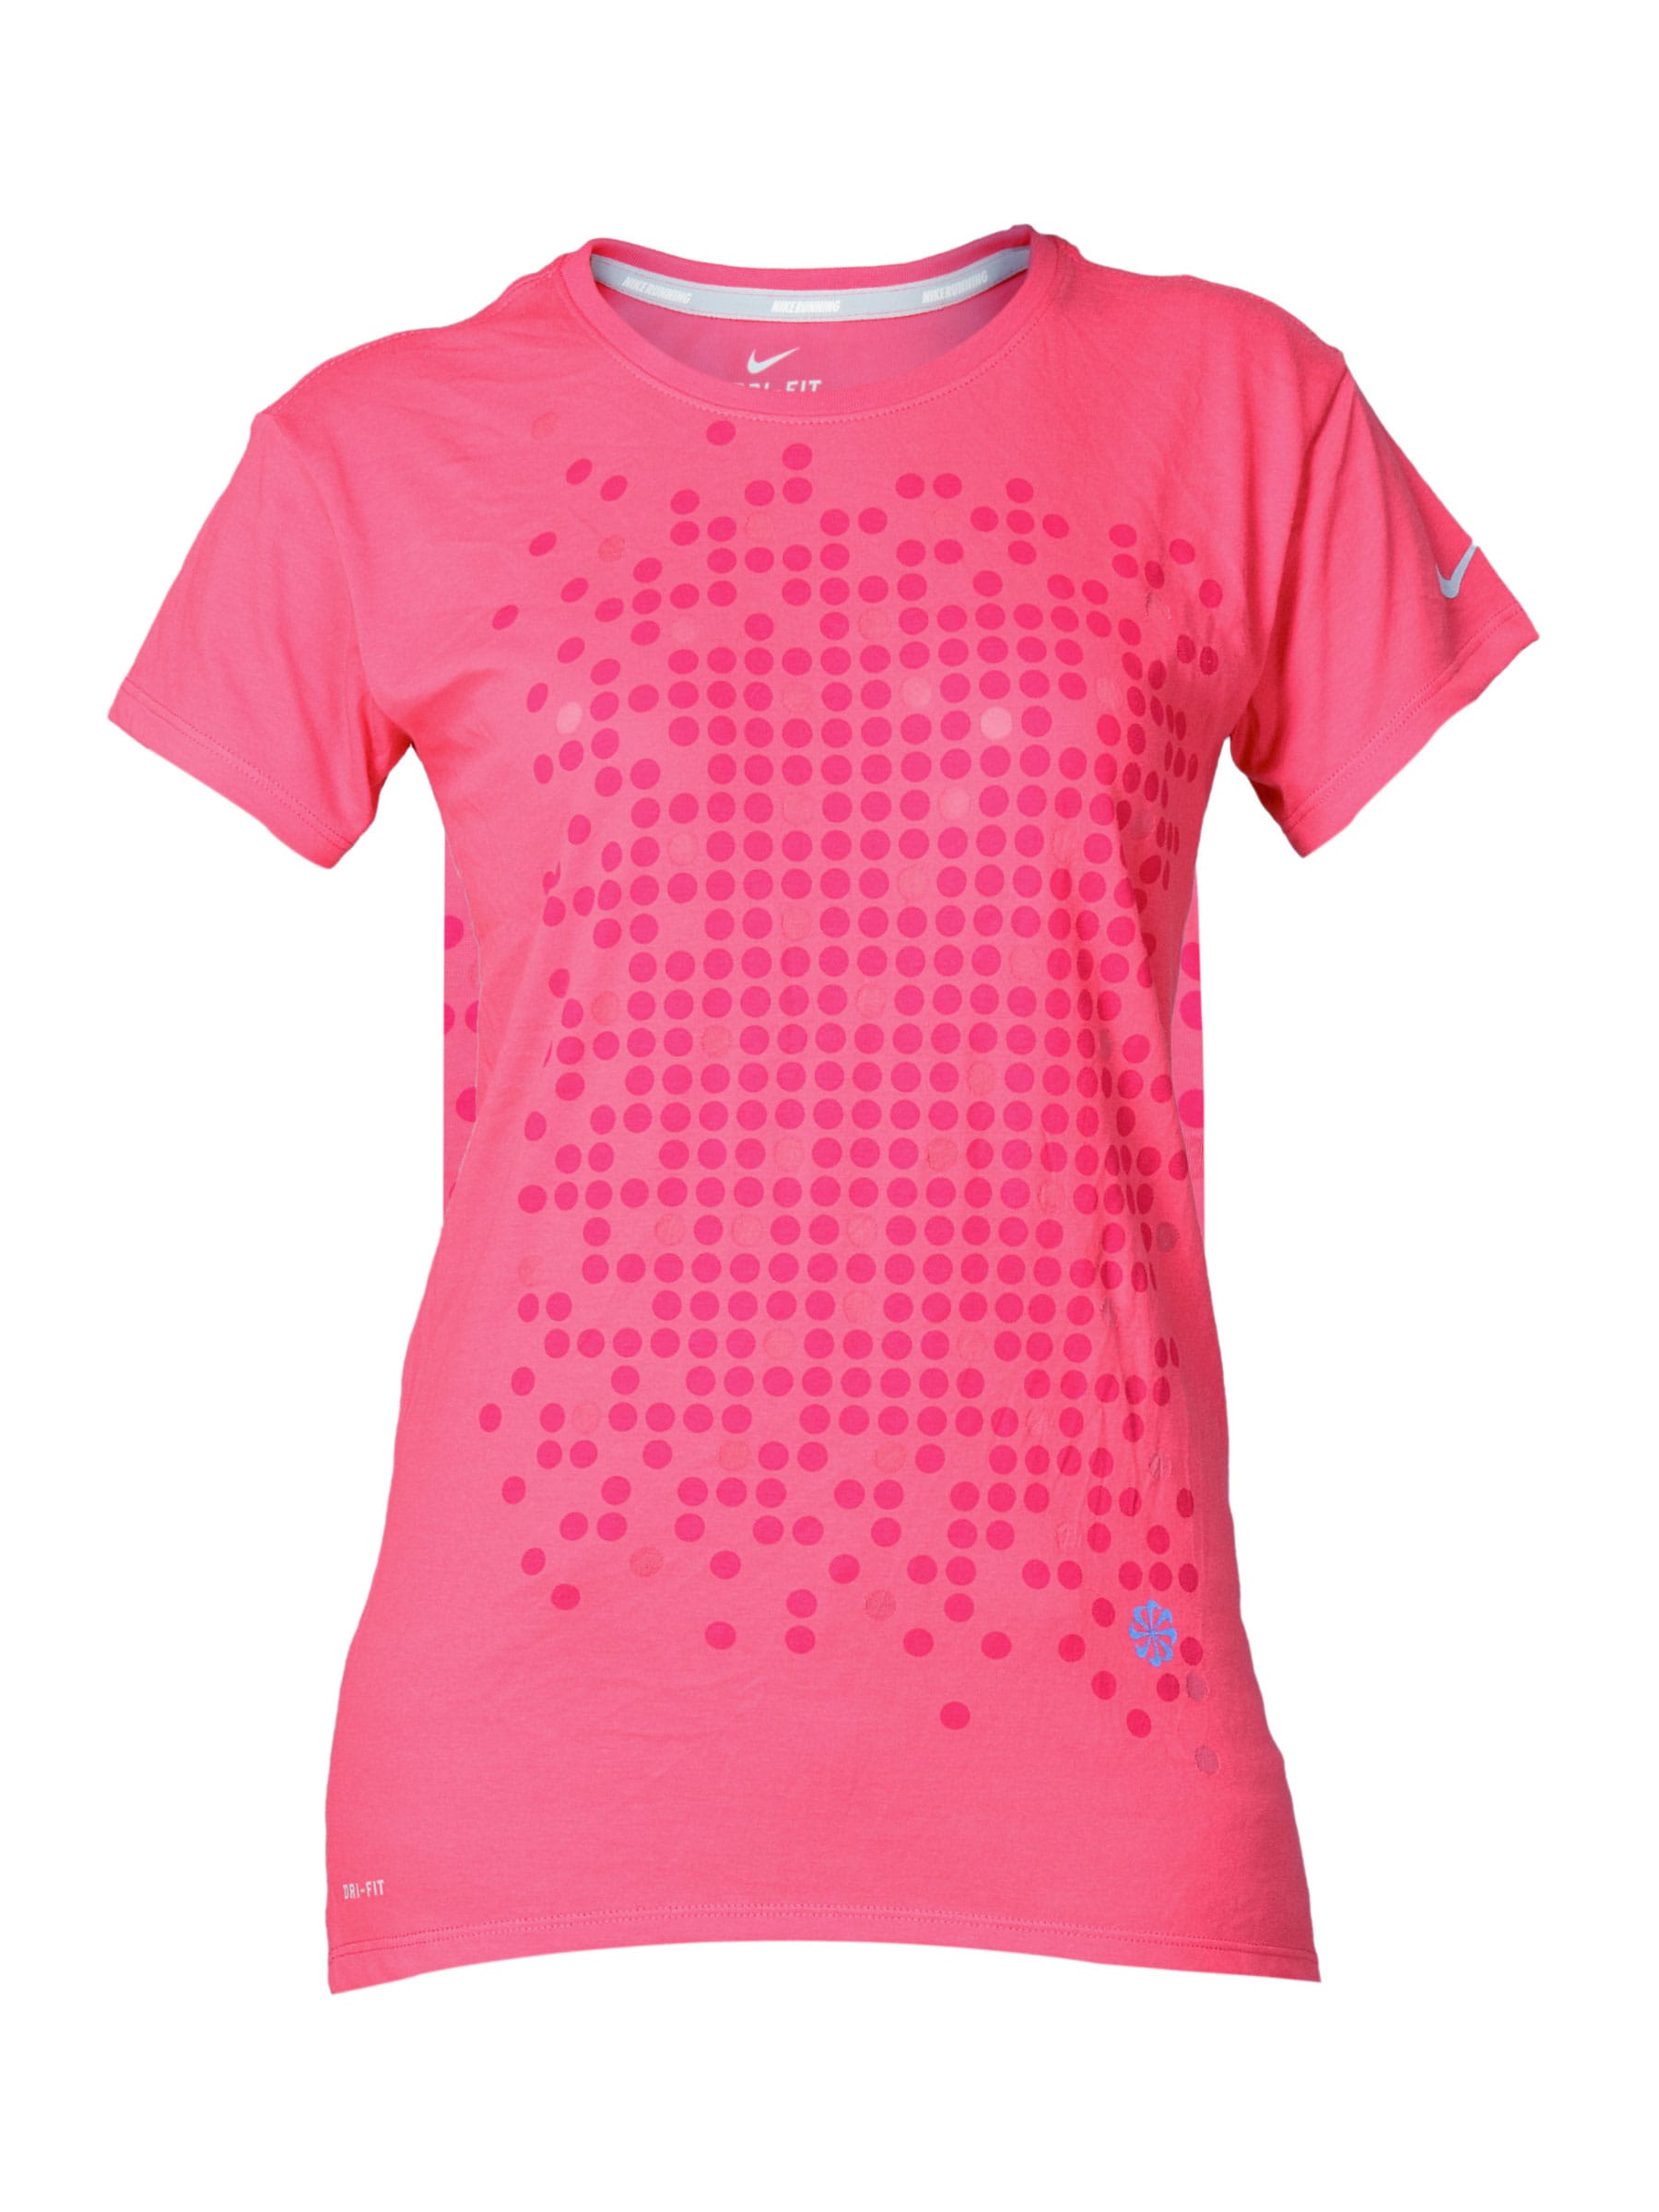 Nike Women's As Cruise Pink T-shirt